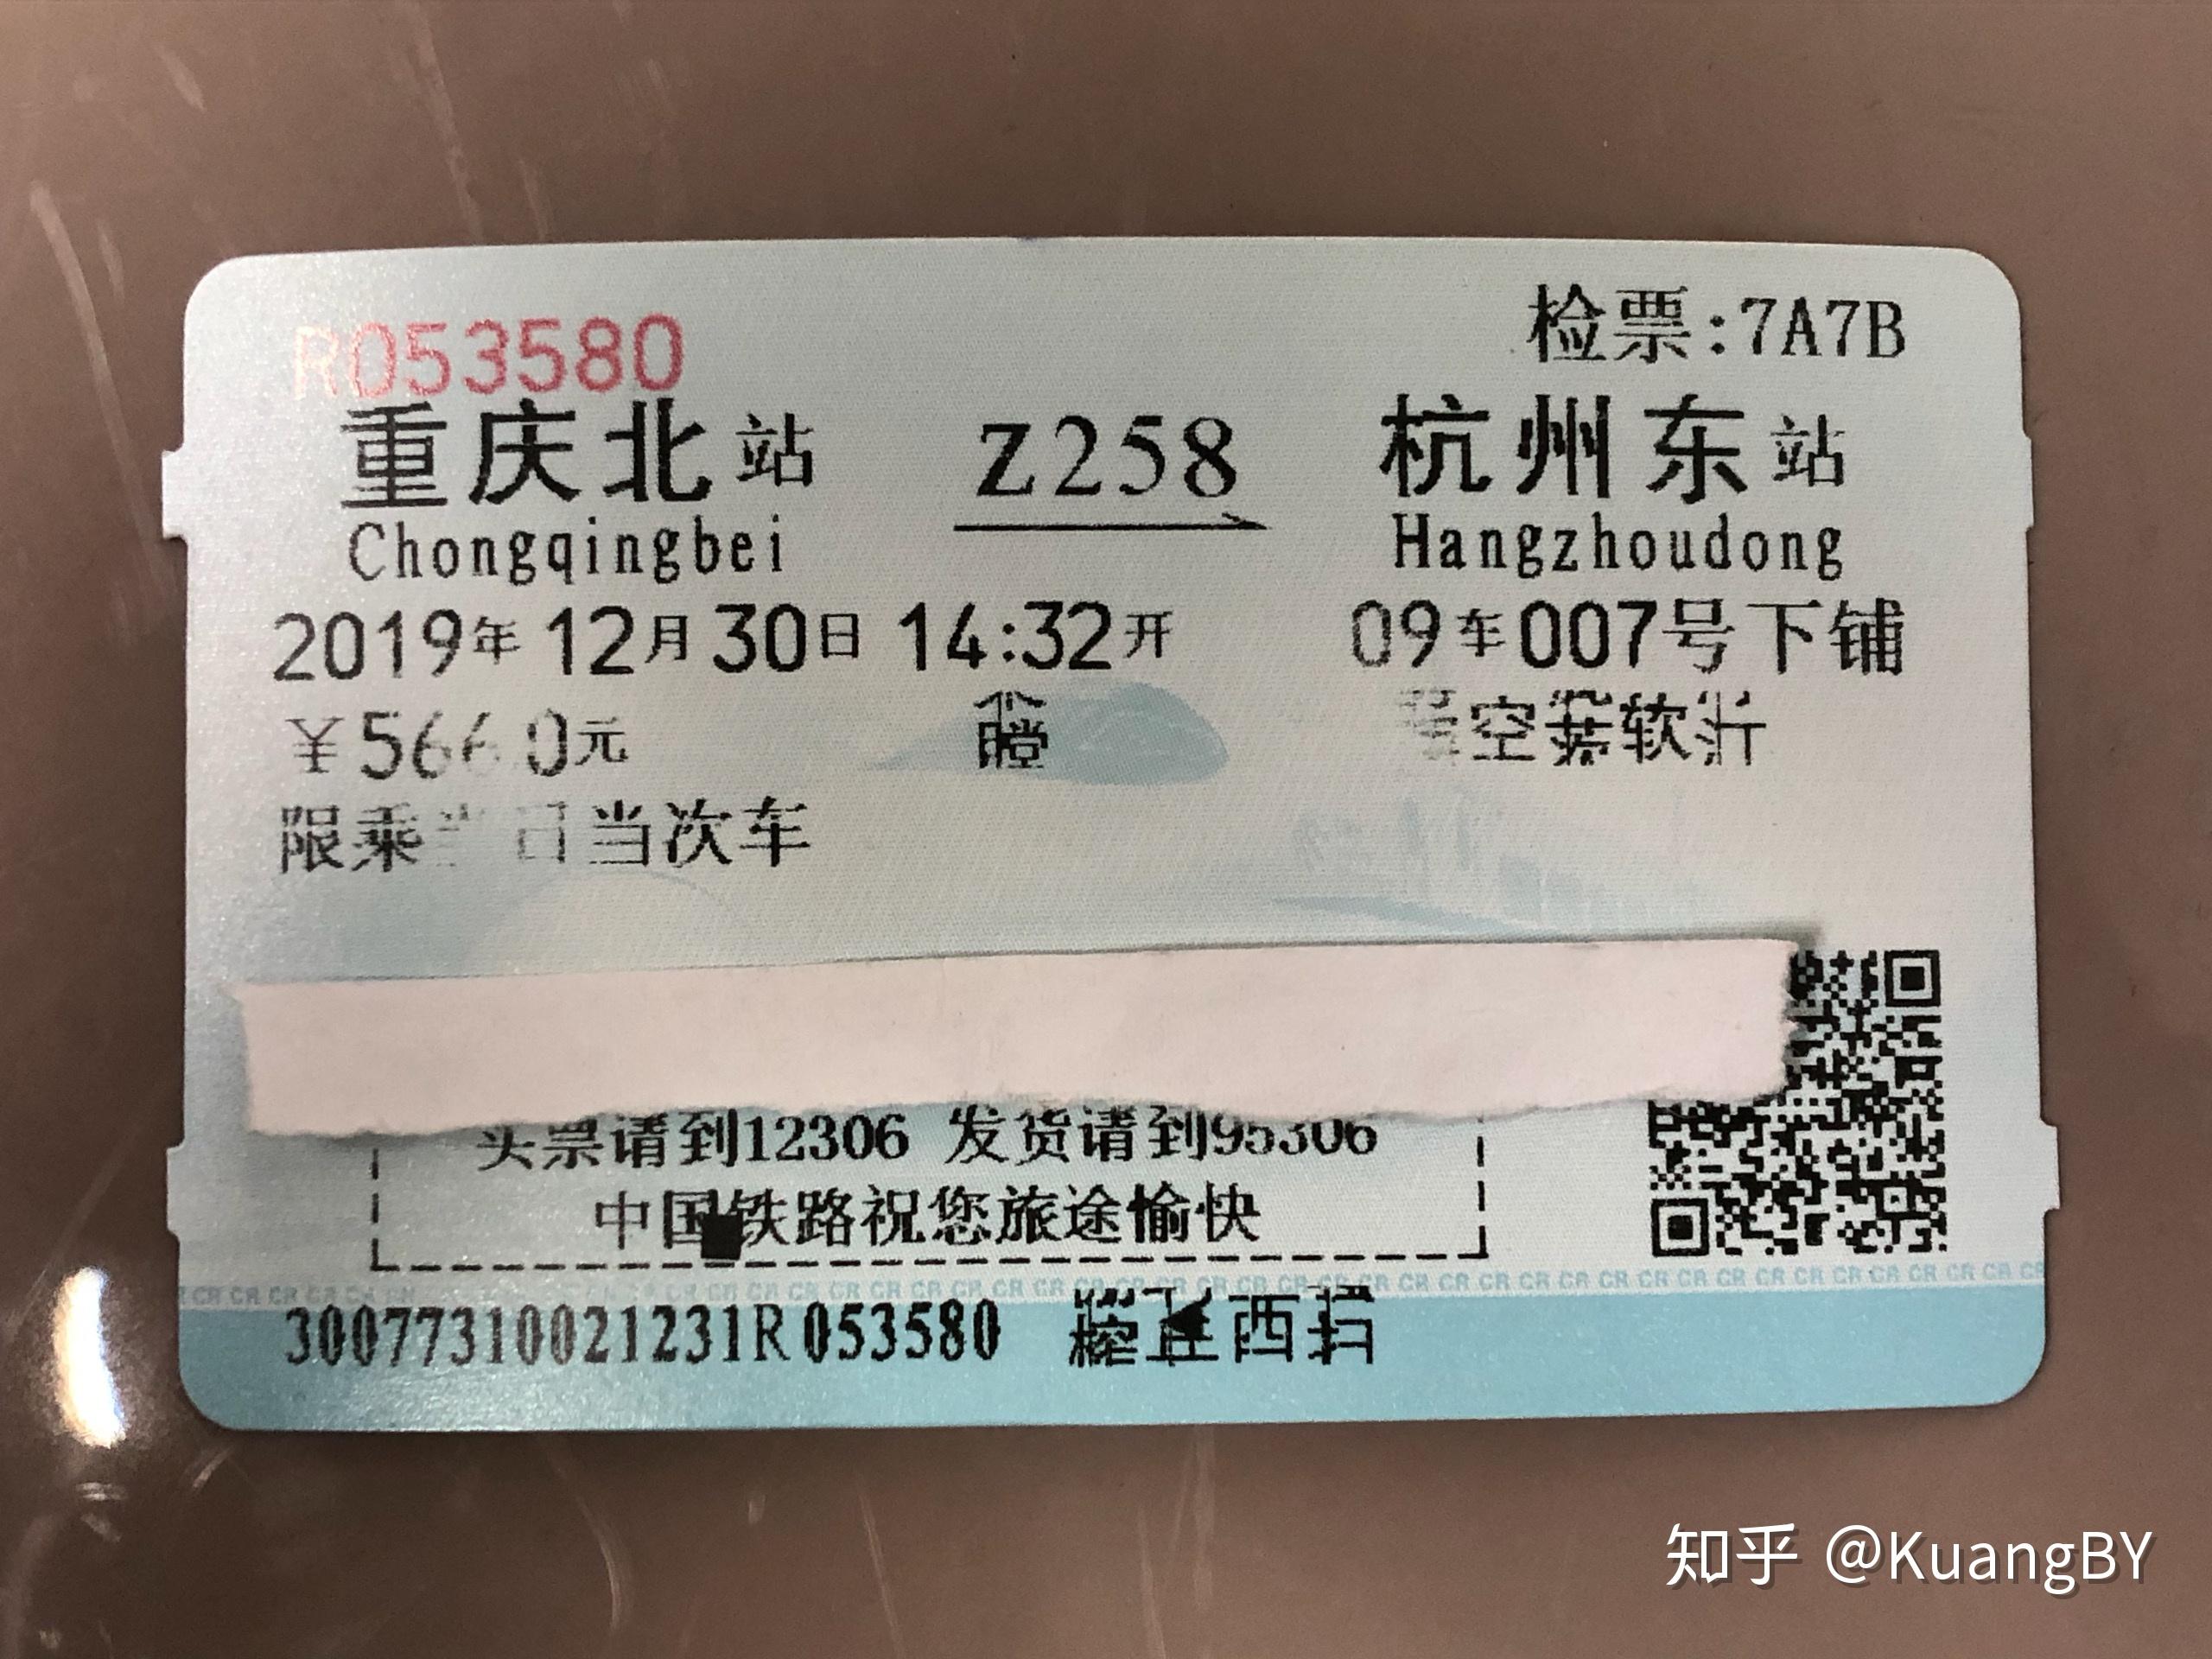 重庆北站21a21b检票口-图库-五毛网